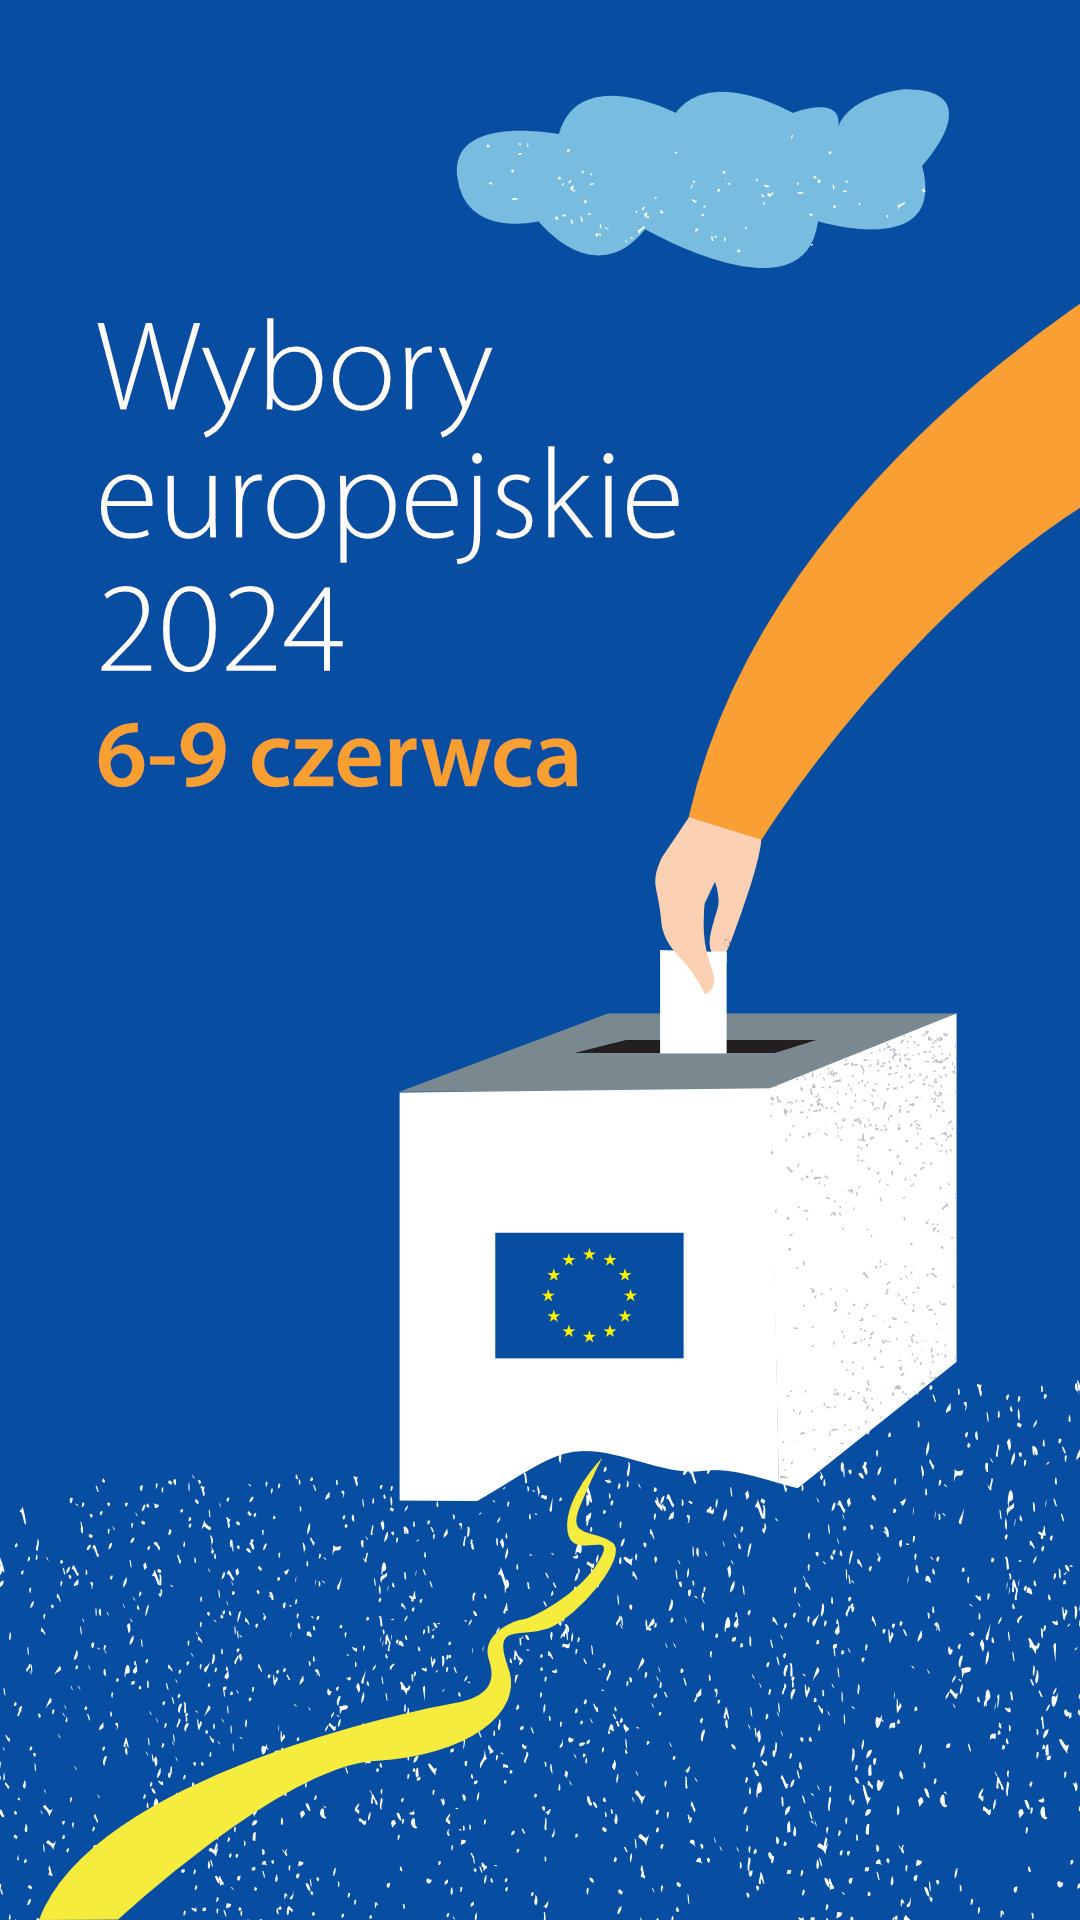 Wybory europejskie 2024 - Story